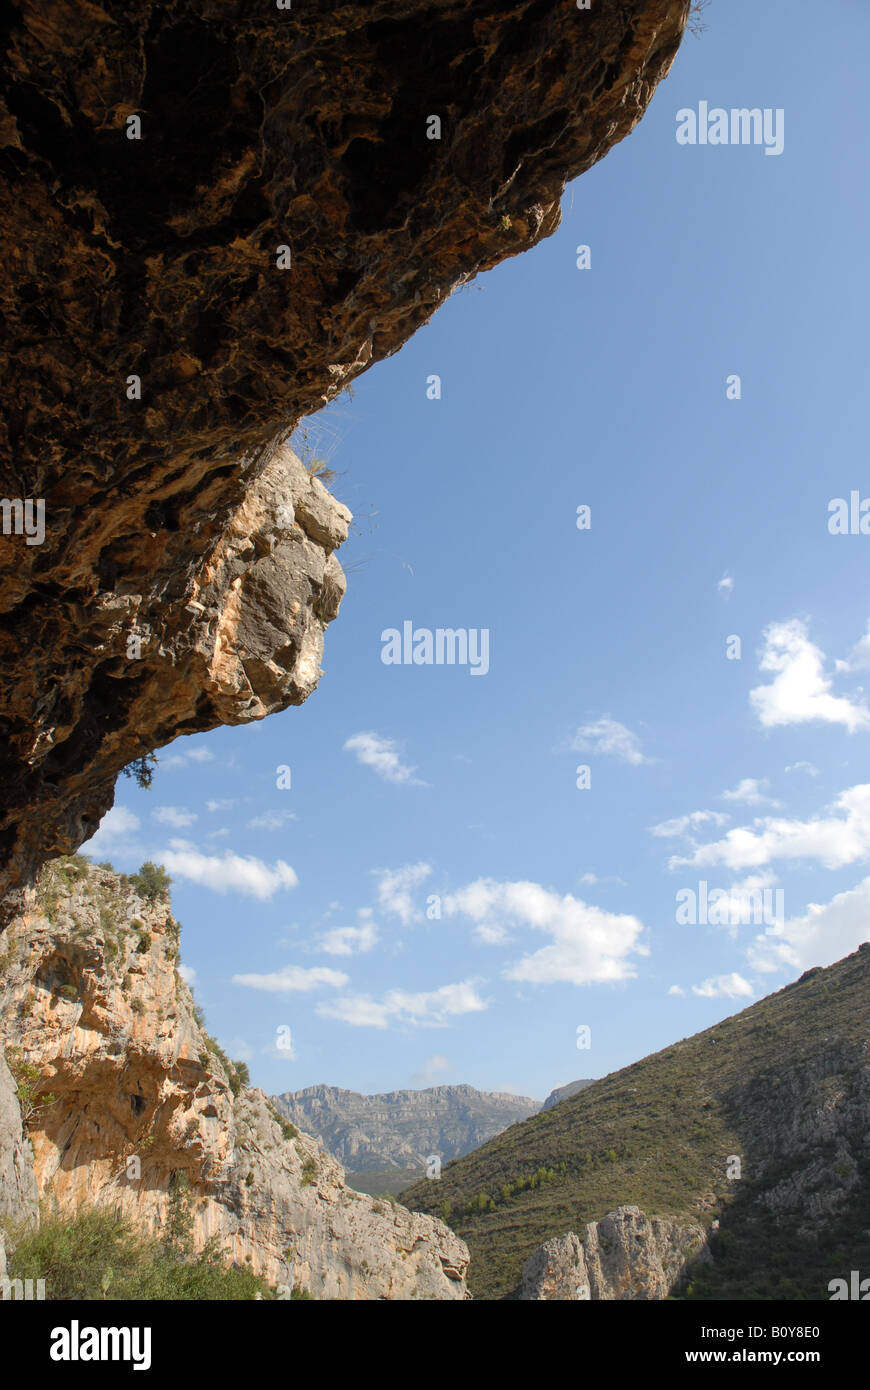 Sitio de Arte Rupestre esquemático de macro del Neolítico, Pla de petracos, Castell de Castells, provincia de Alicante, Comunidad Valenciana, España Foto de stock